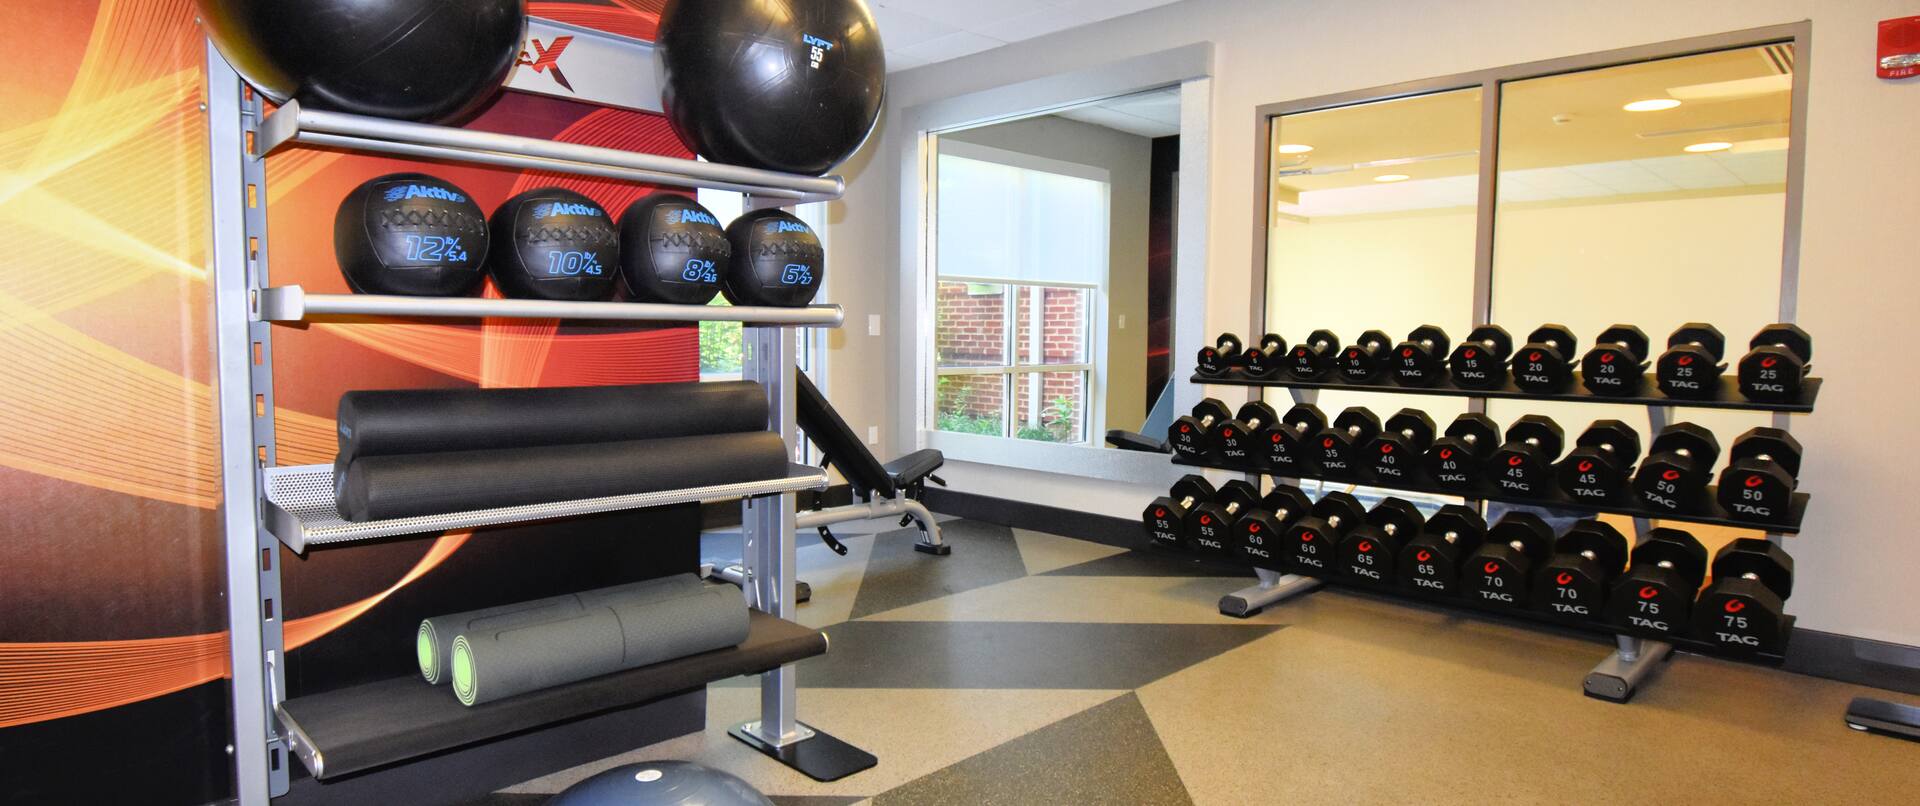 Fitness Center equipment racks